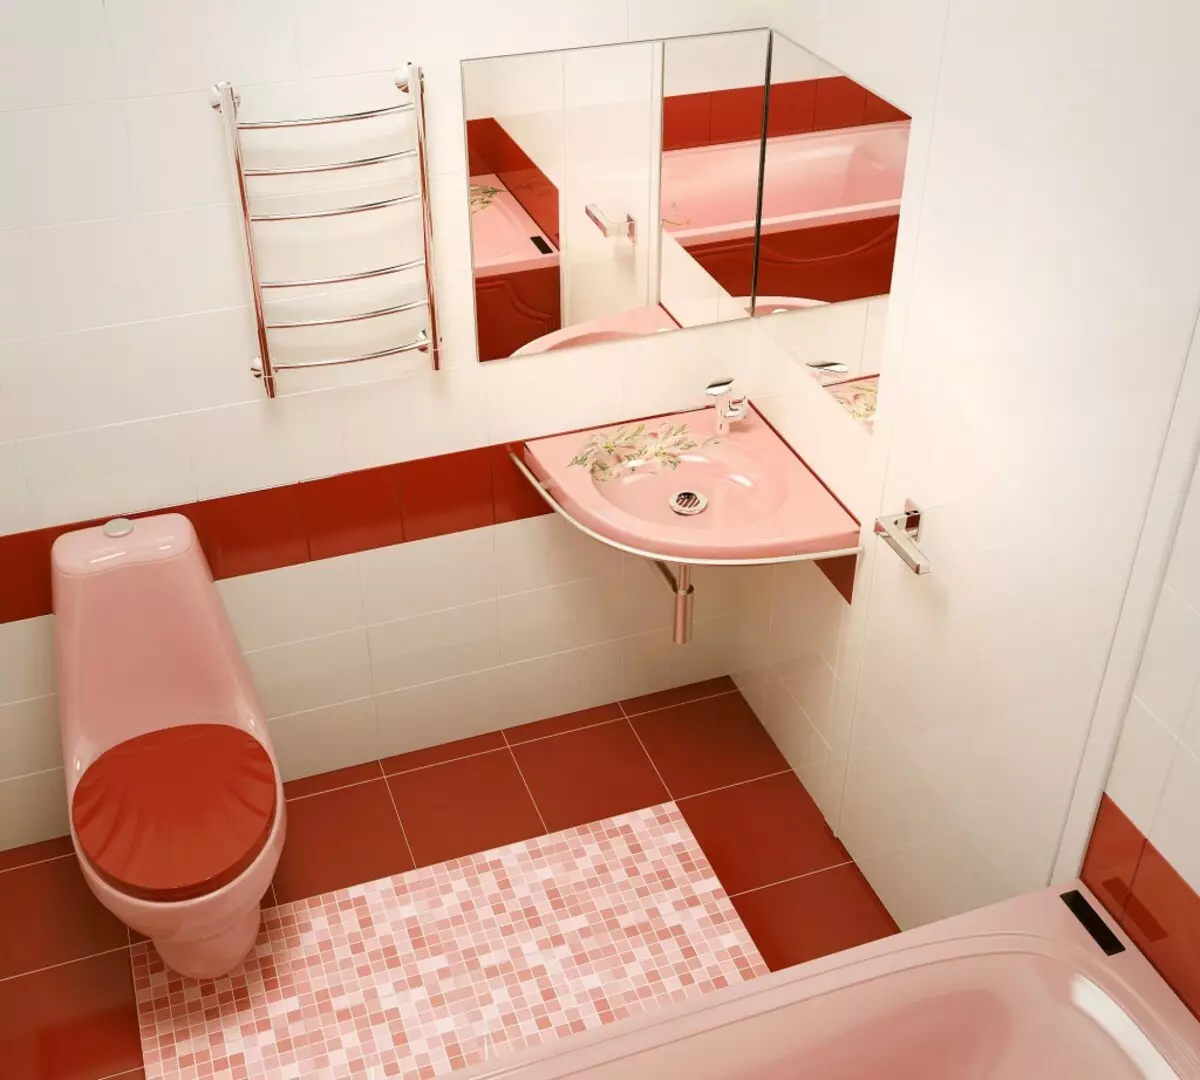 Badkamerontwerp gecombineerd met 3e vierkant toilet. M (76 foto's): Binnenkant van de interieur met een wasmachine, een kleine kamer leggen 10068_61